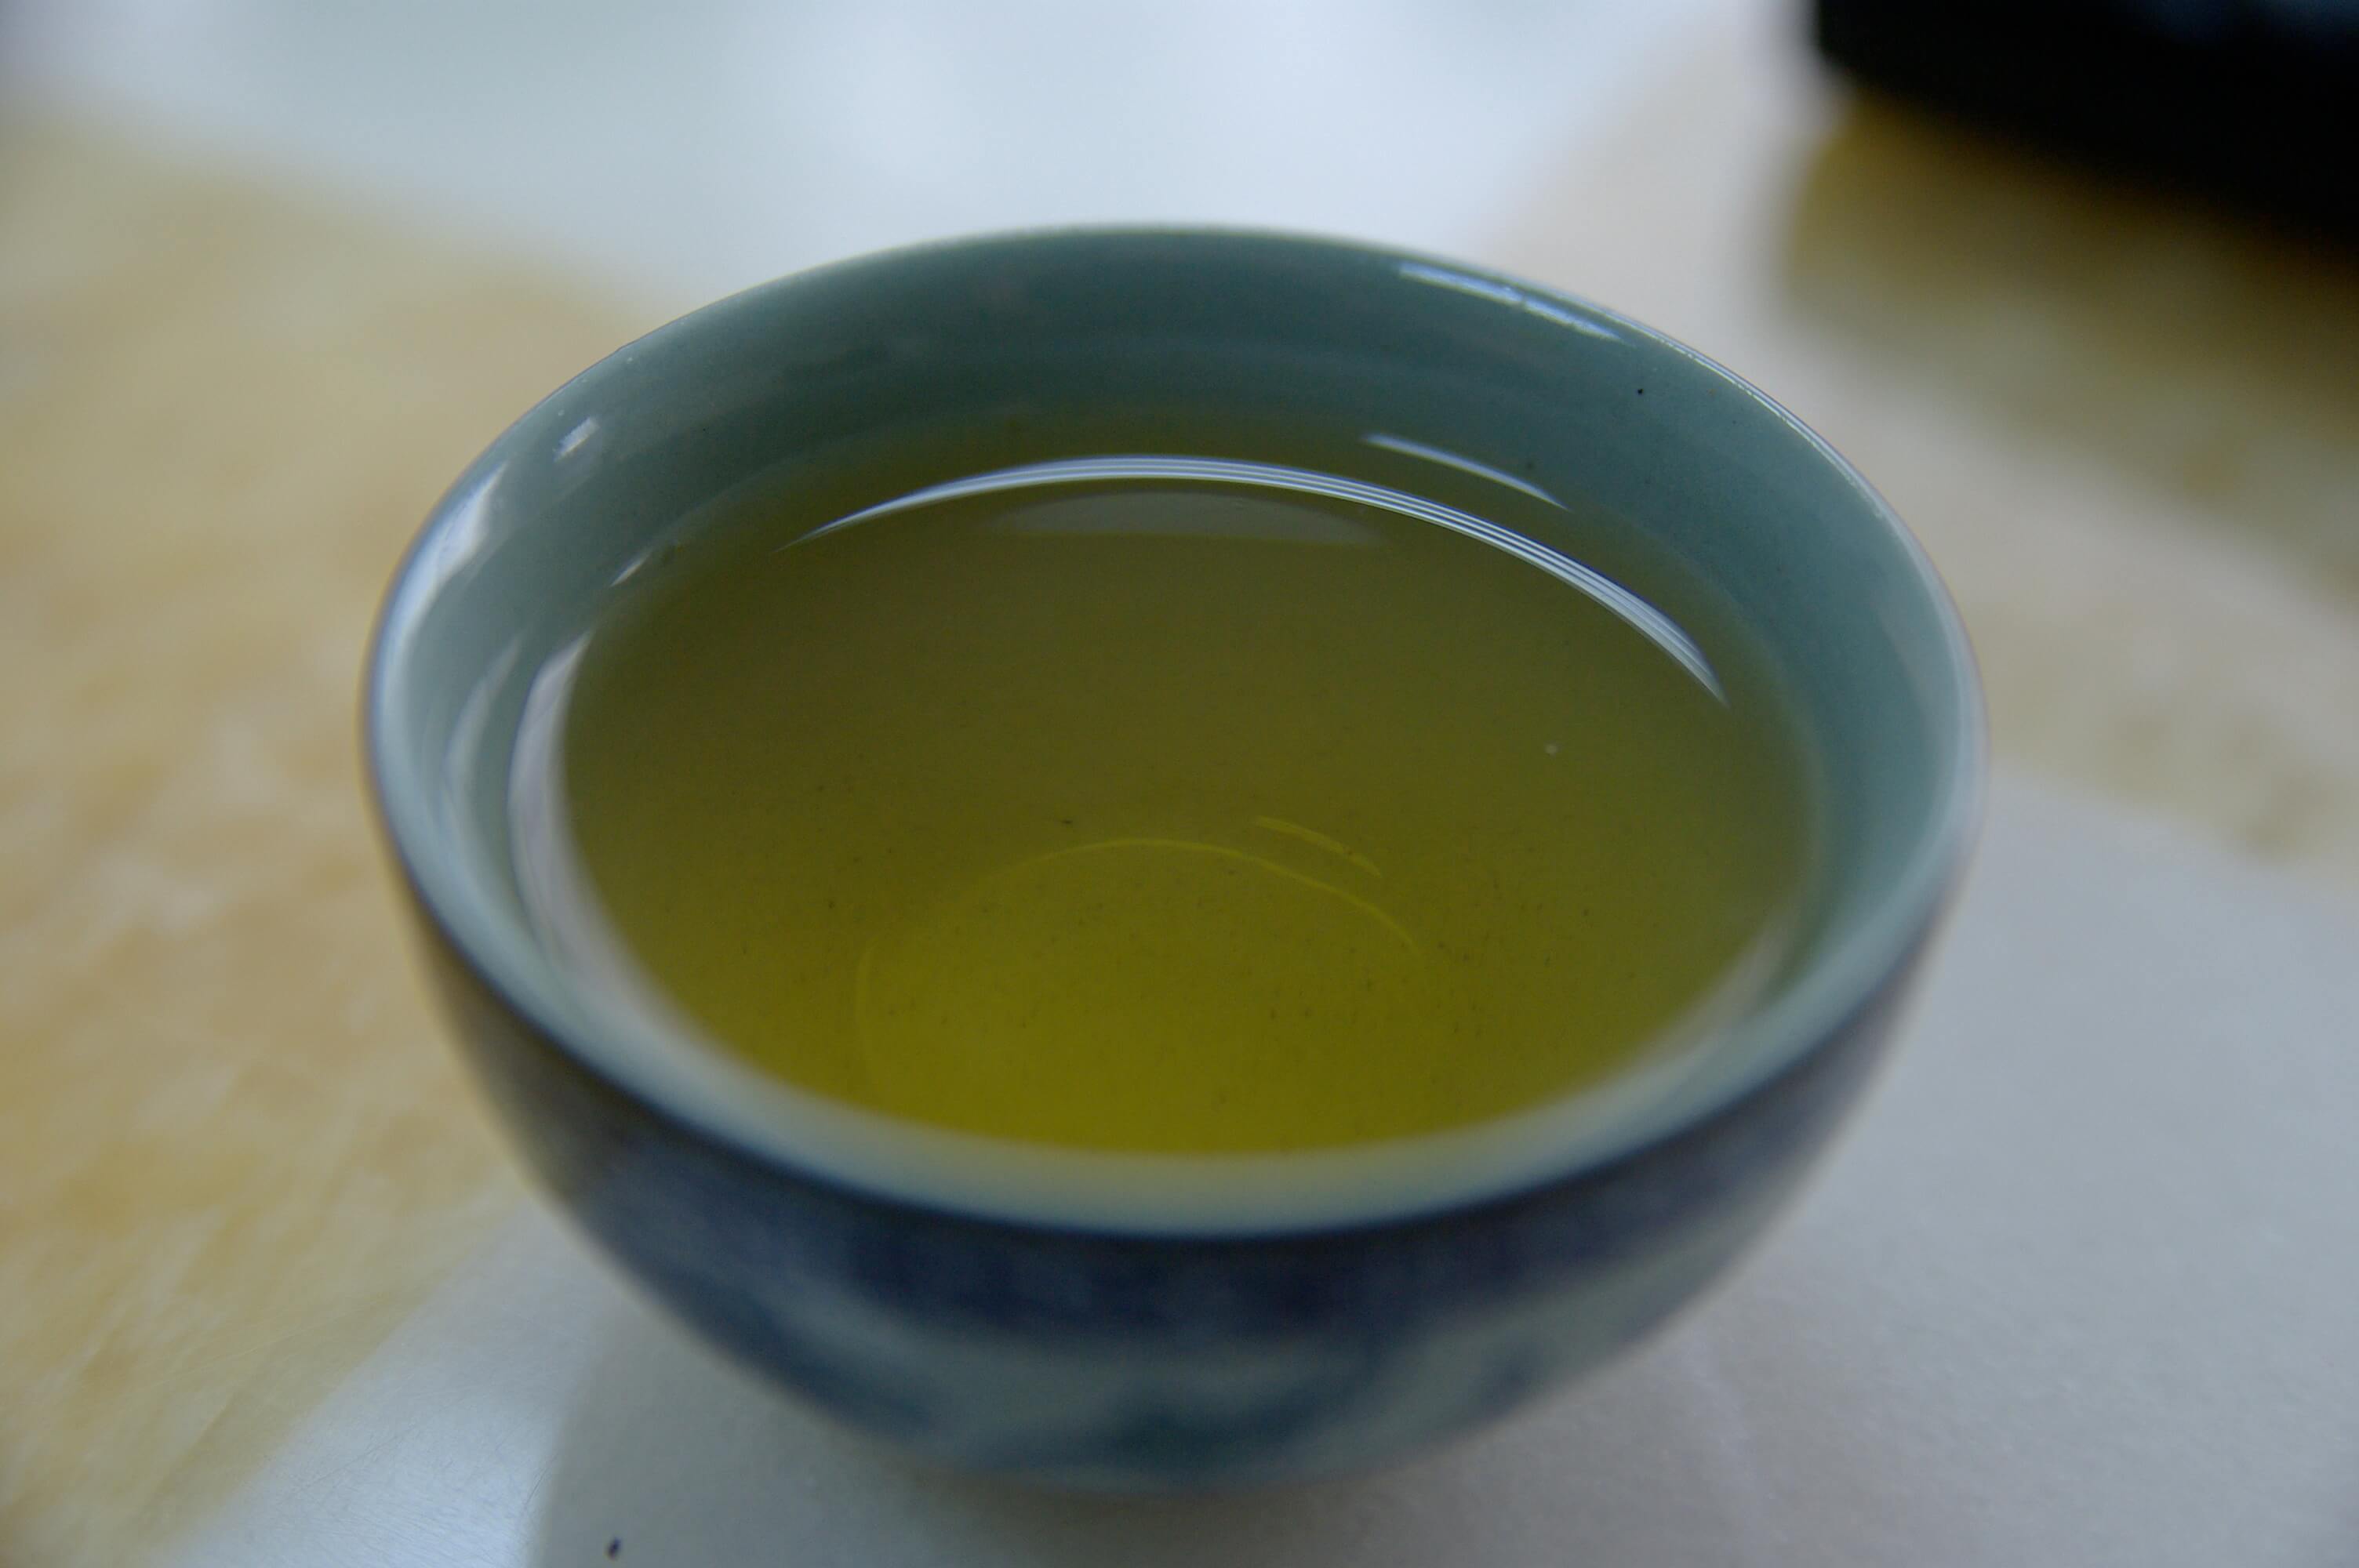 Green Tea as a Lucid Dream Supplement